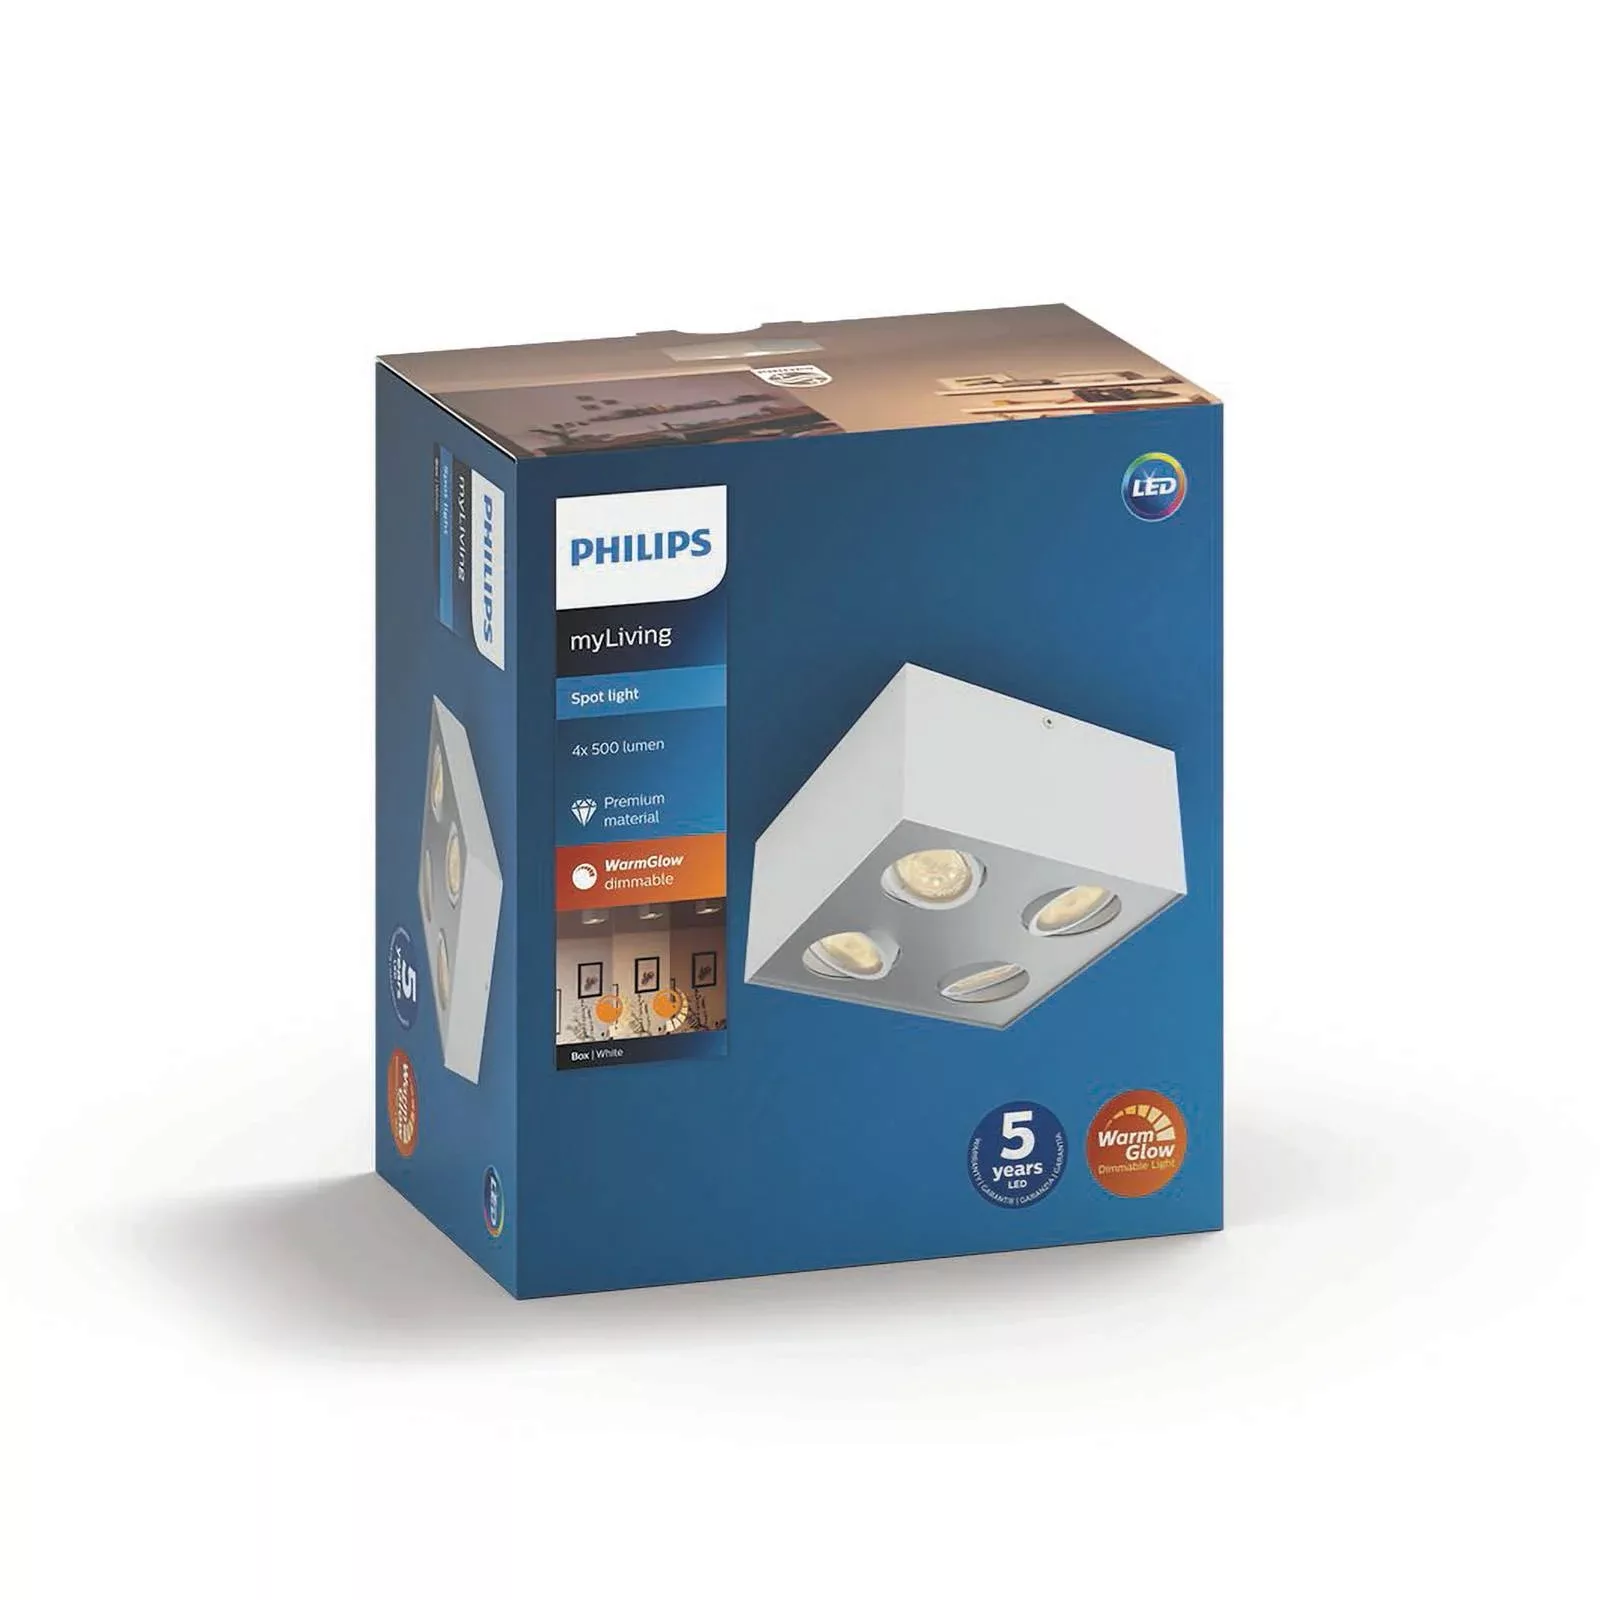 LED Spot Box in Weiß 4x 4,5W 2000lm günstig online kaufen